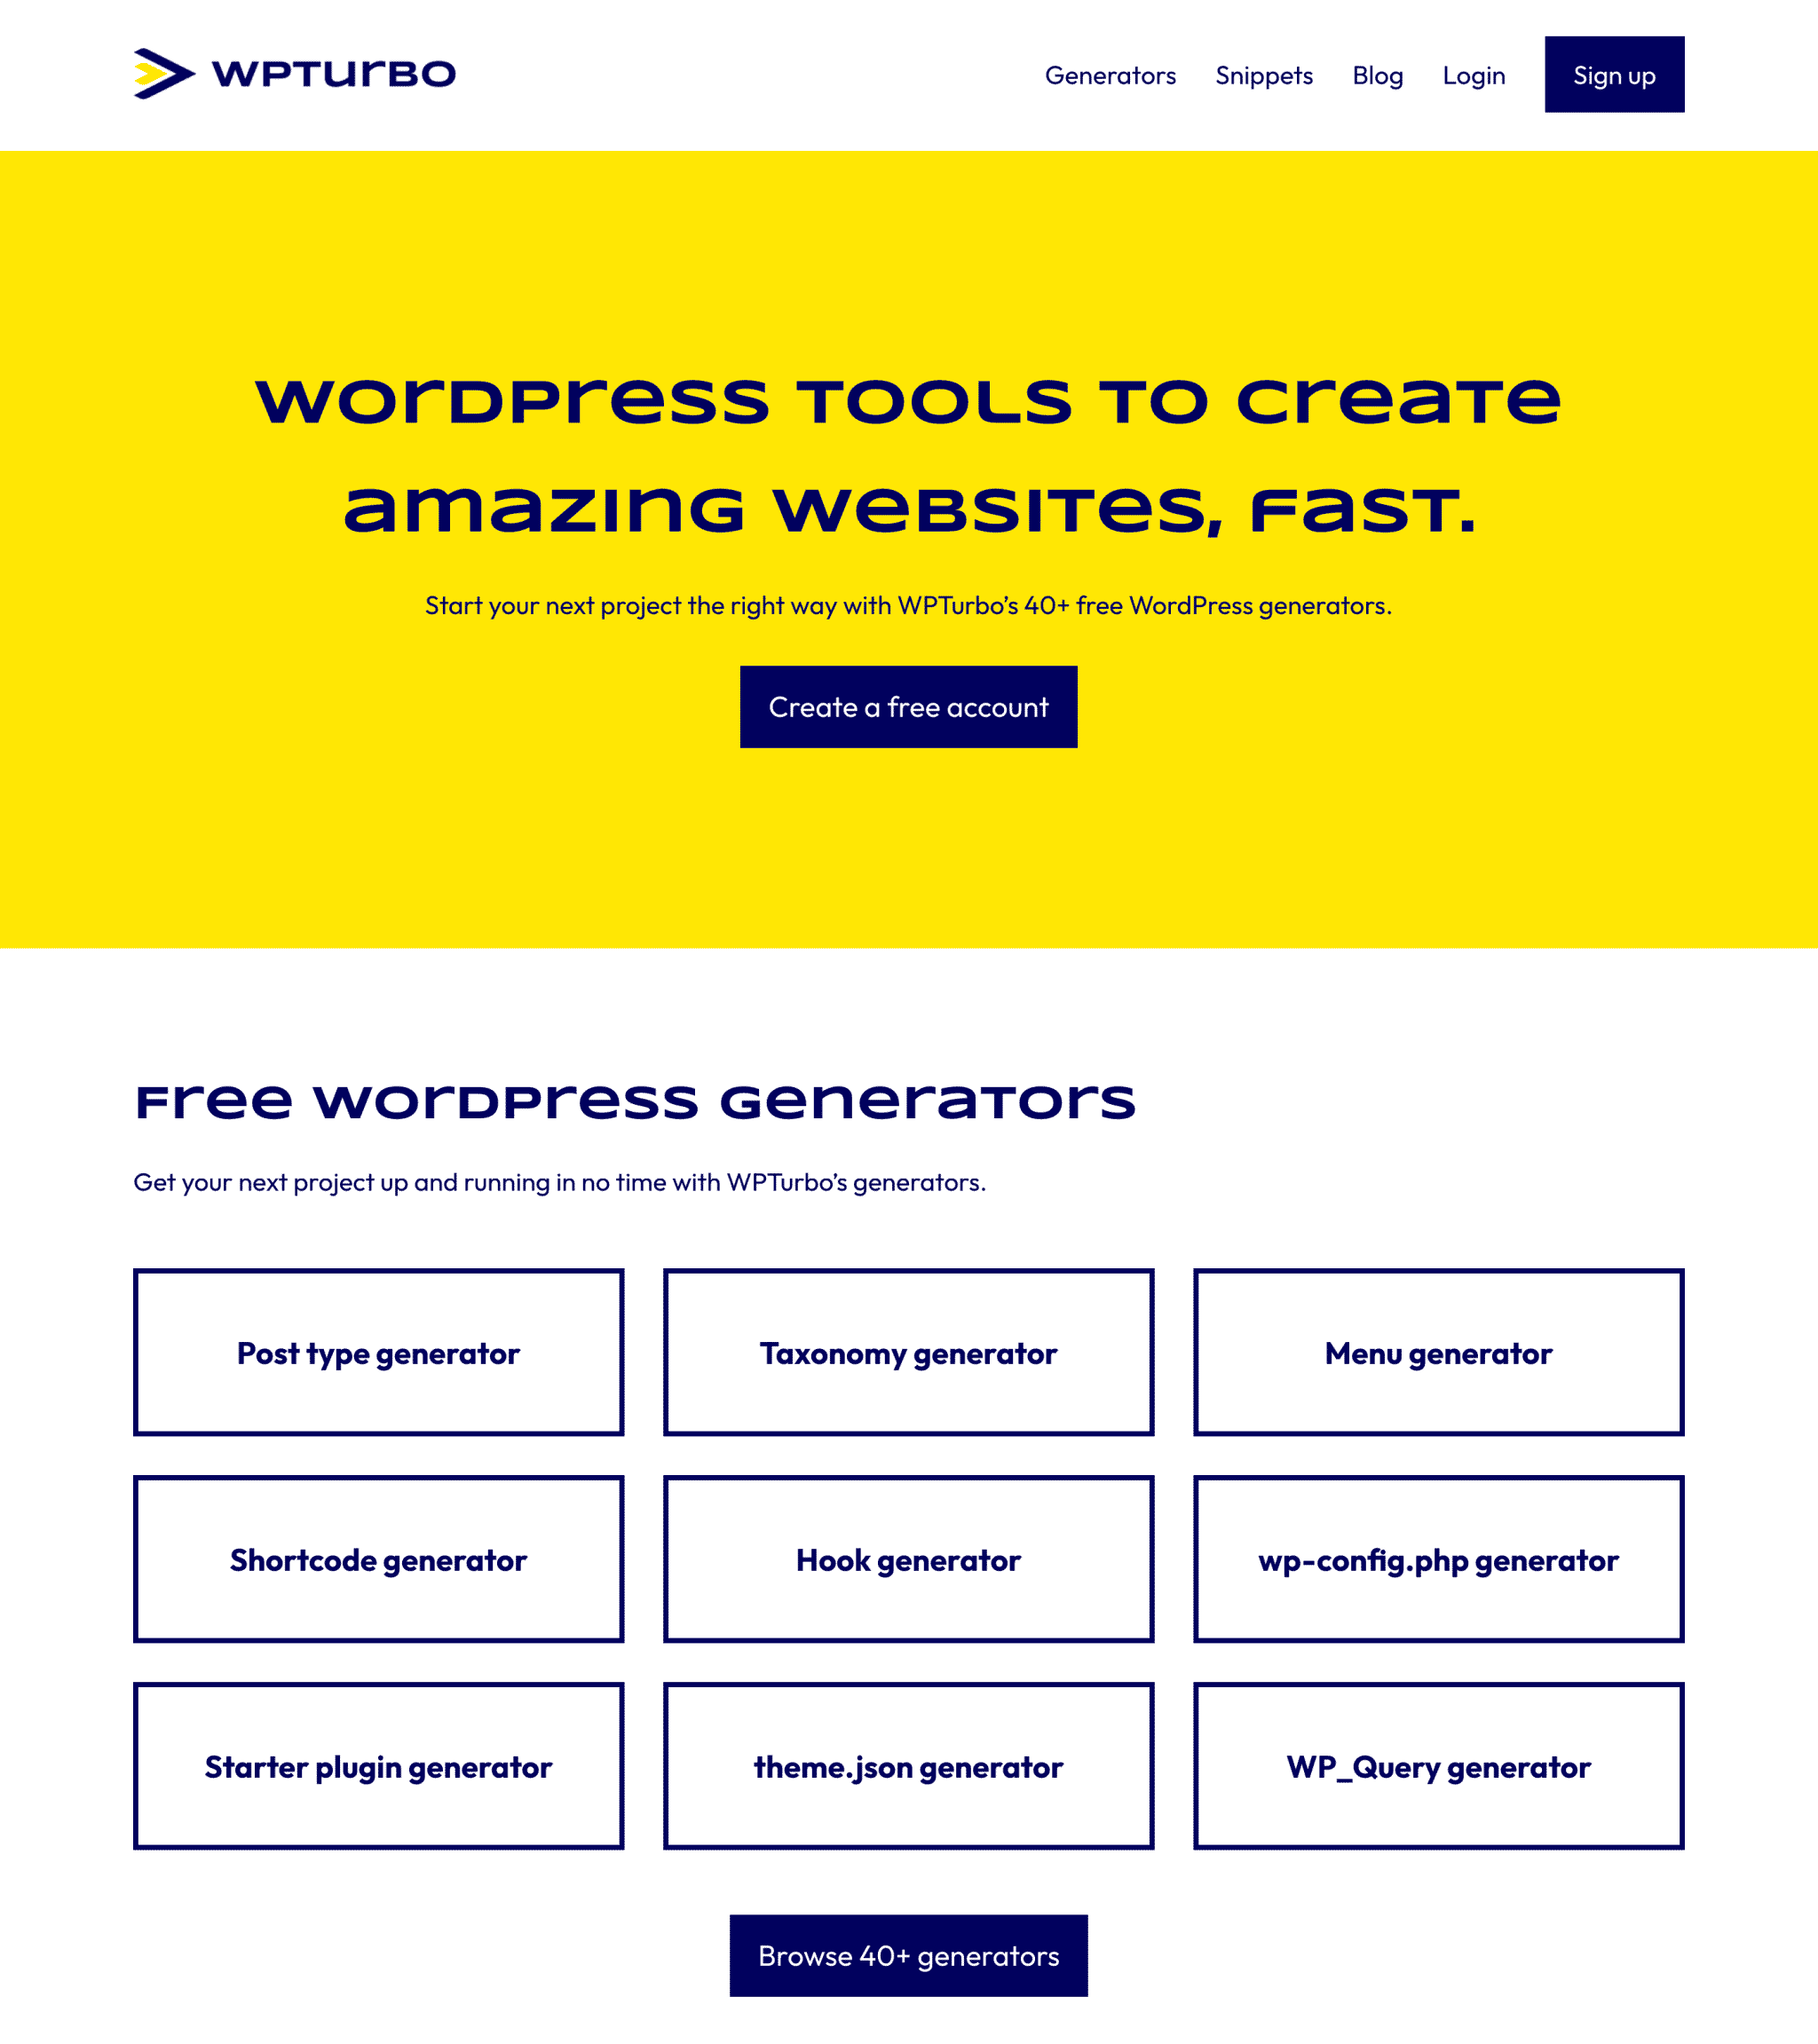 صفحه اصلی WPTurbo، سایتی که به توسعه دهندگان وردپرس کمک می کند تا سایت ها را سریعتر بسازند.